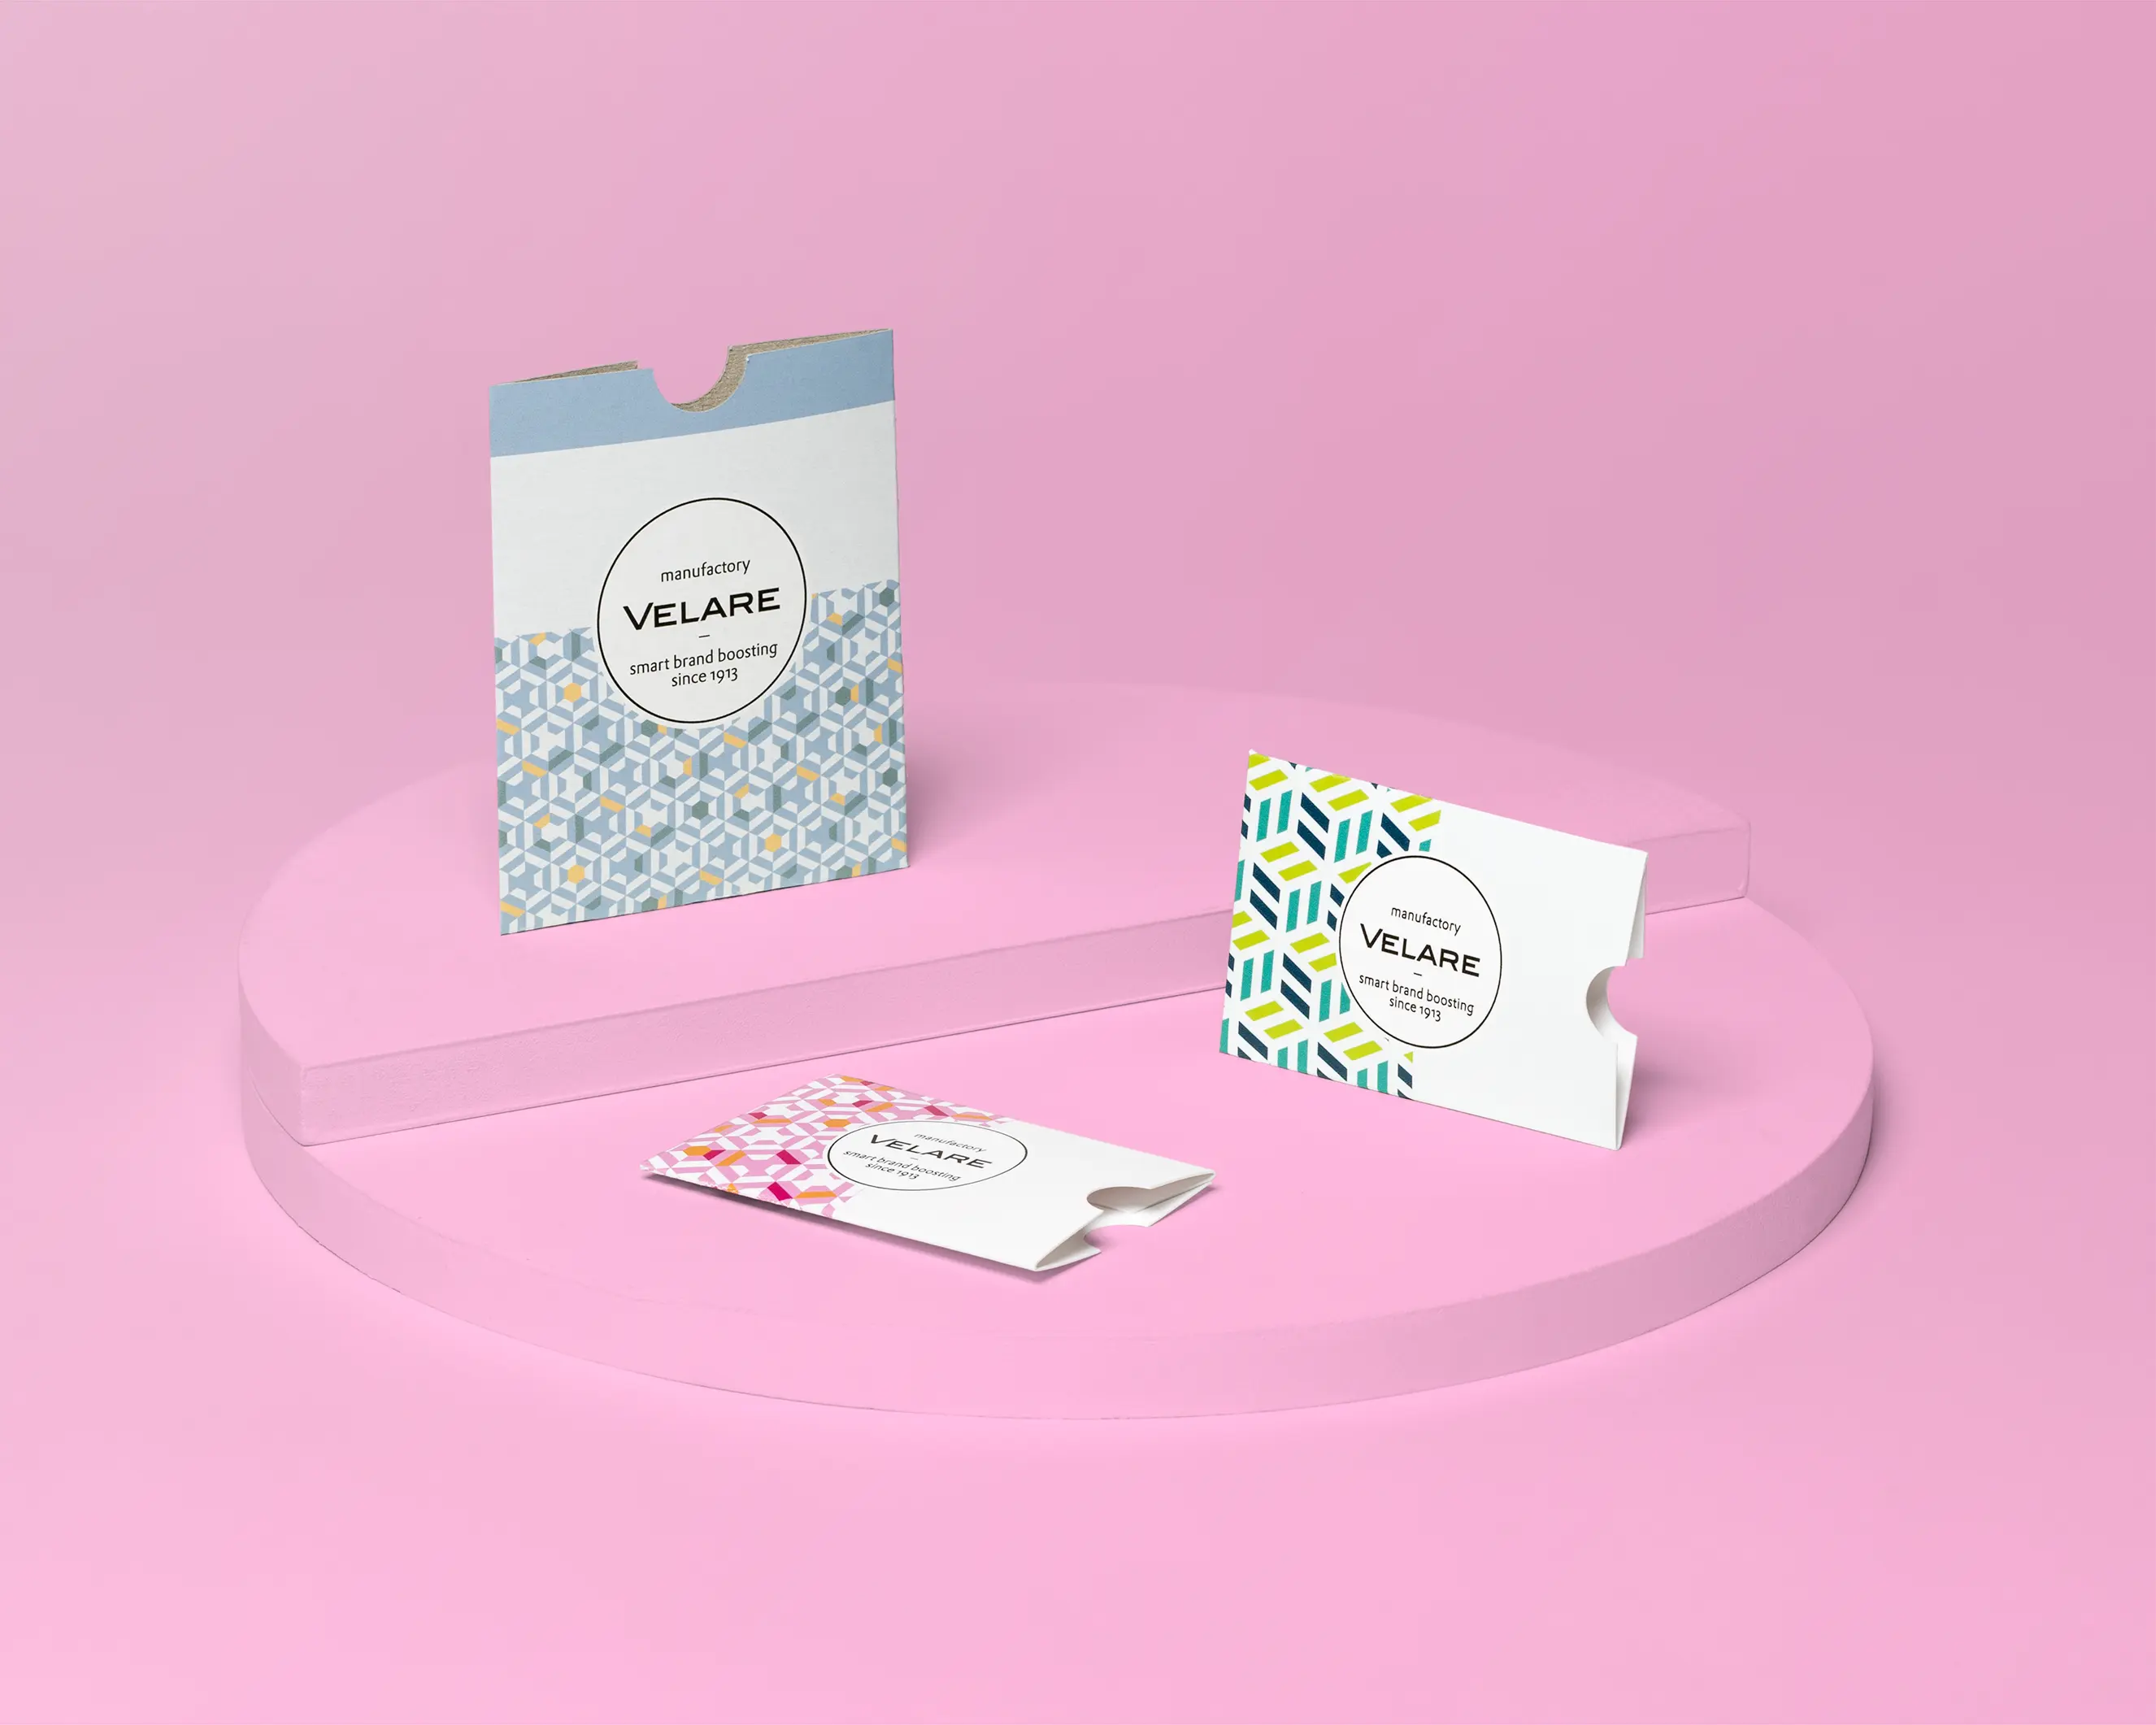 Kartenhülle ohne Verschluss, drei Verpackungen auf dem Podest, pinker Hintergrund